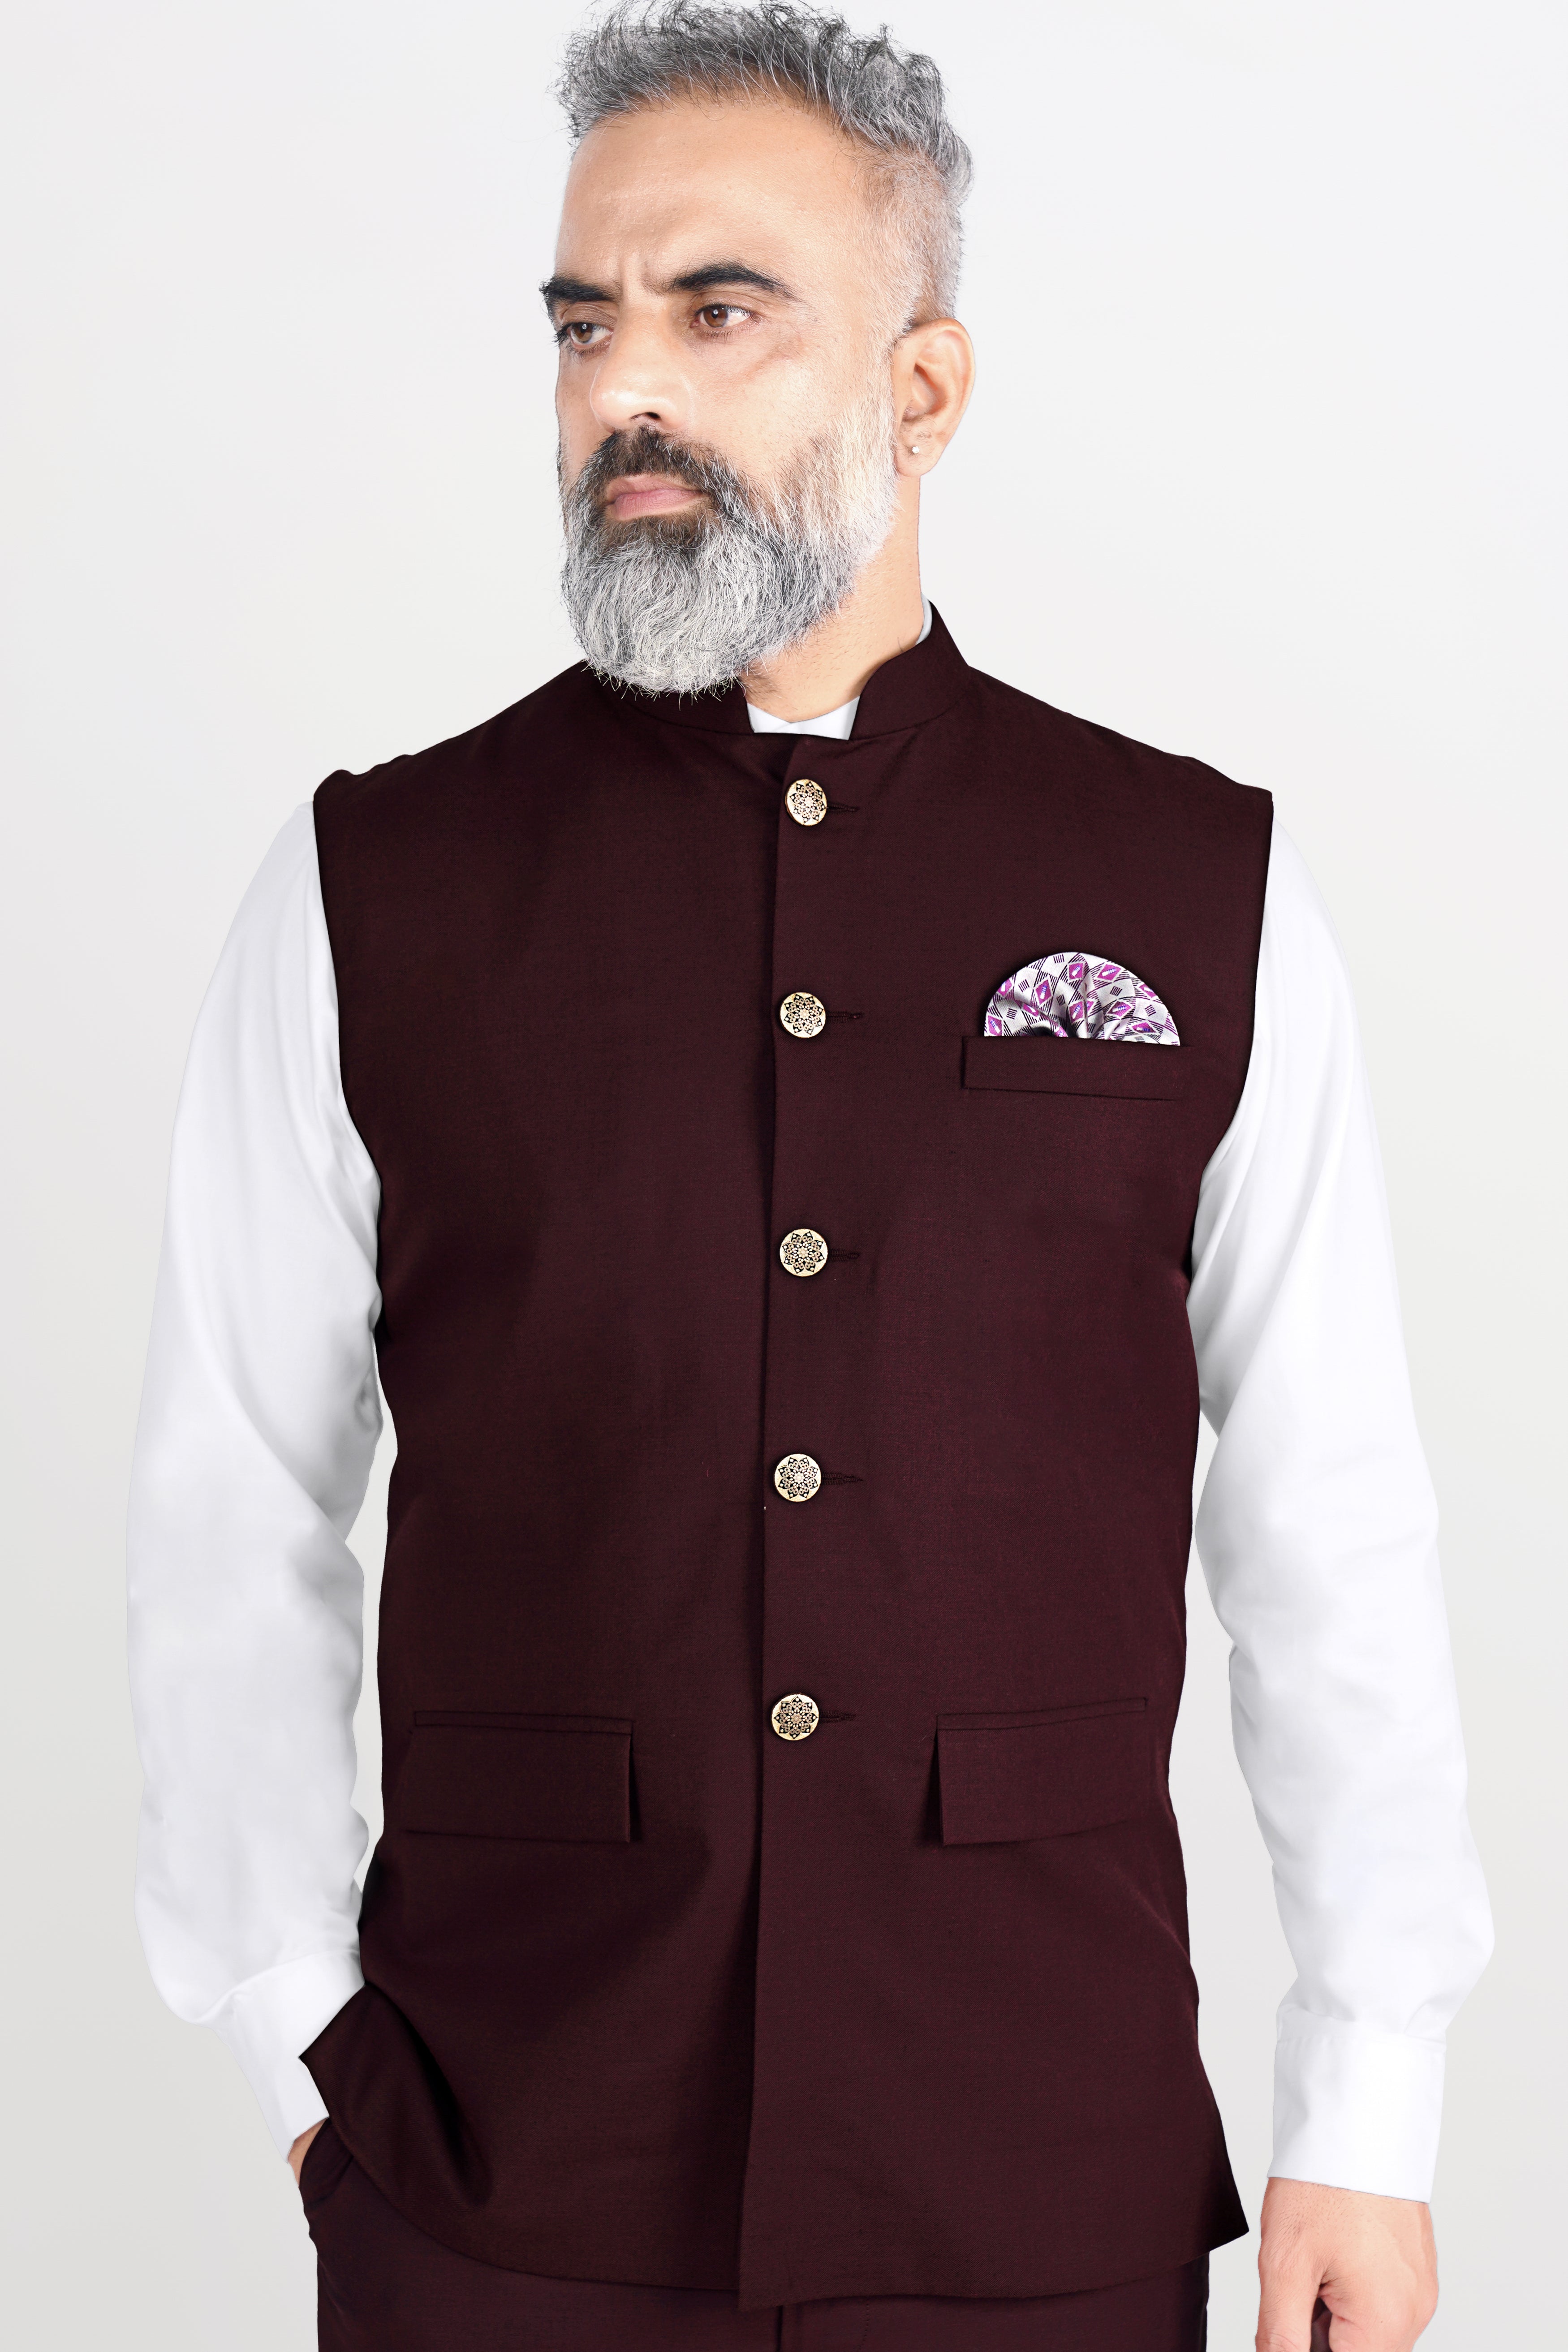 Cotton Silk Blend Solid Nehru Jacket in Maroon | Nehru jackets, Jackets, Maroon  jacket